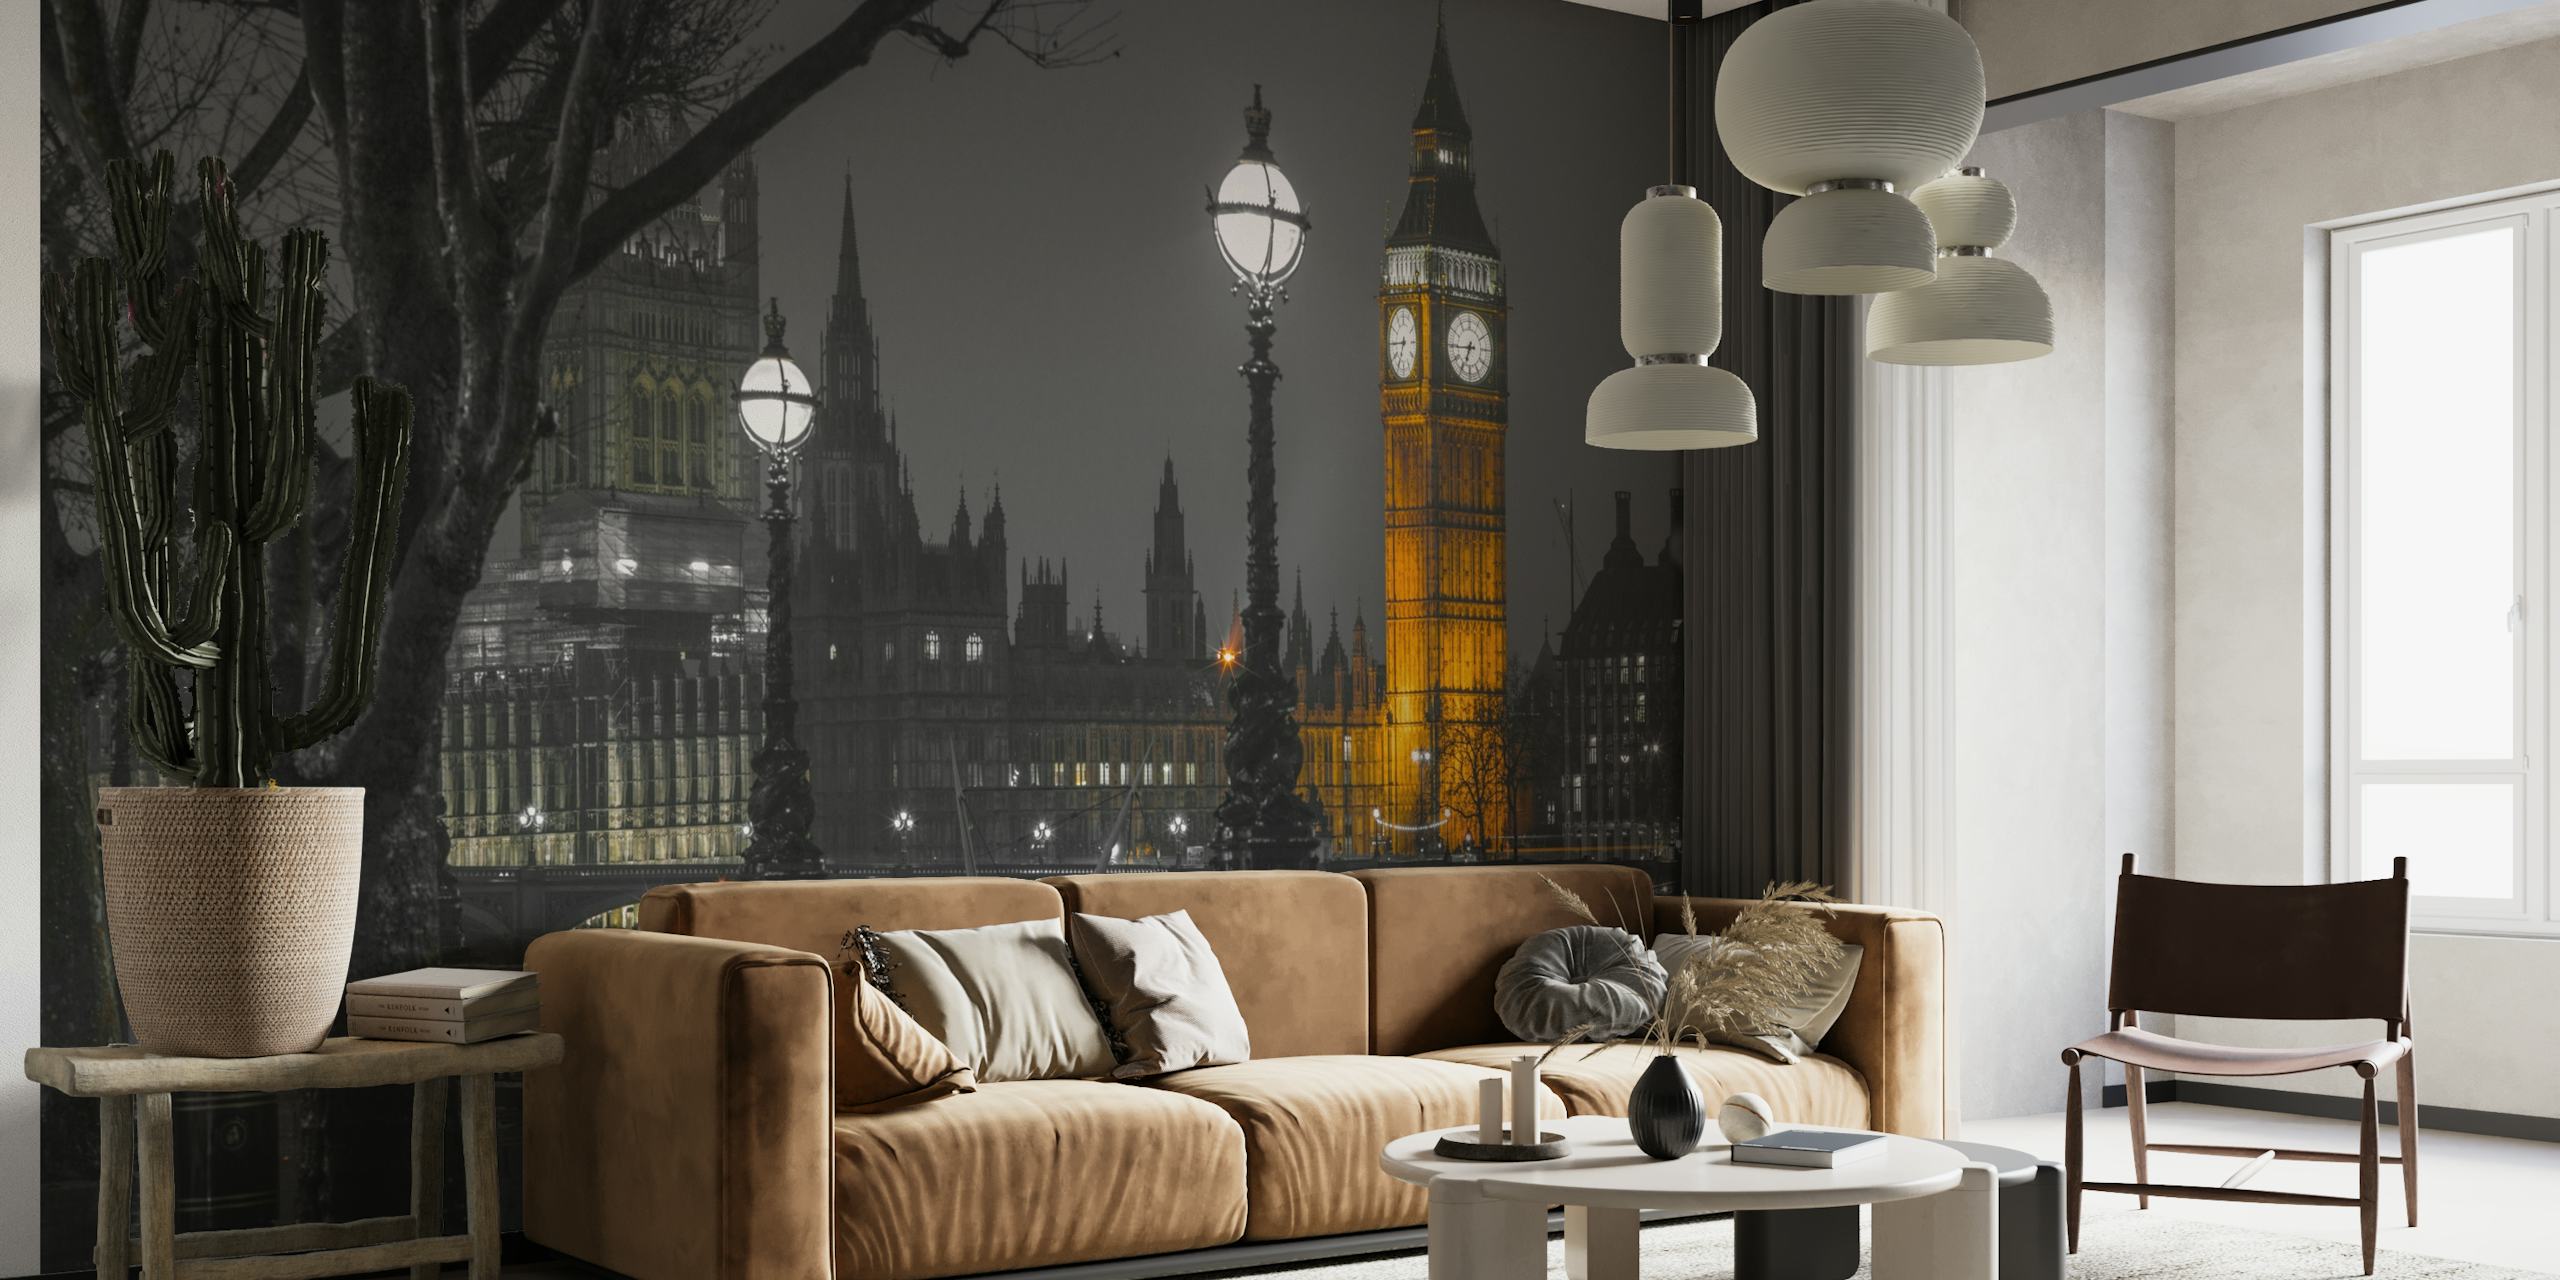 Mural en blanco y negro del paisaje urbano de Londres al atardecer con la Torre Elizabeth iluminada